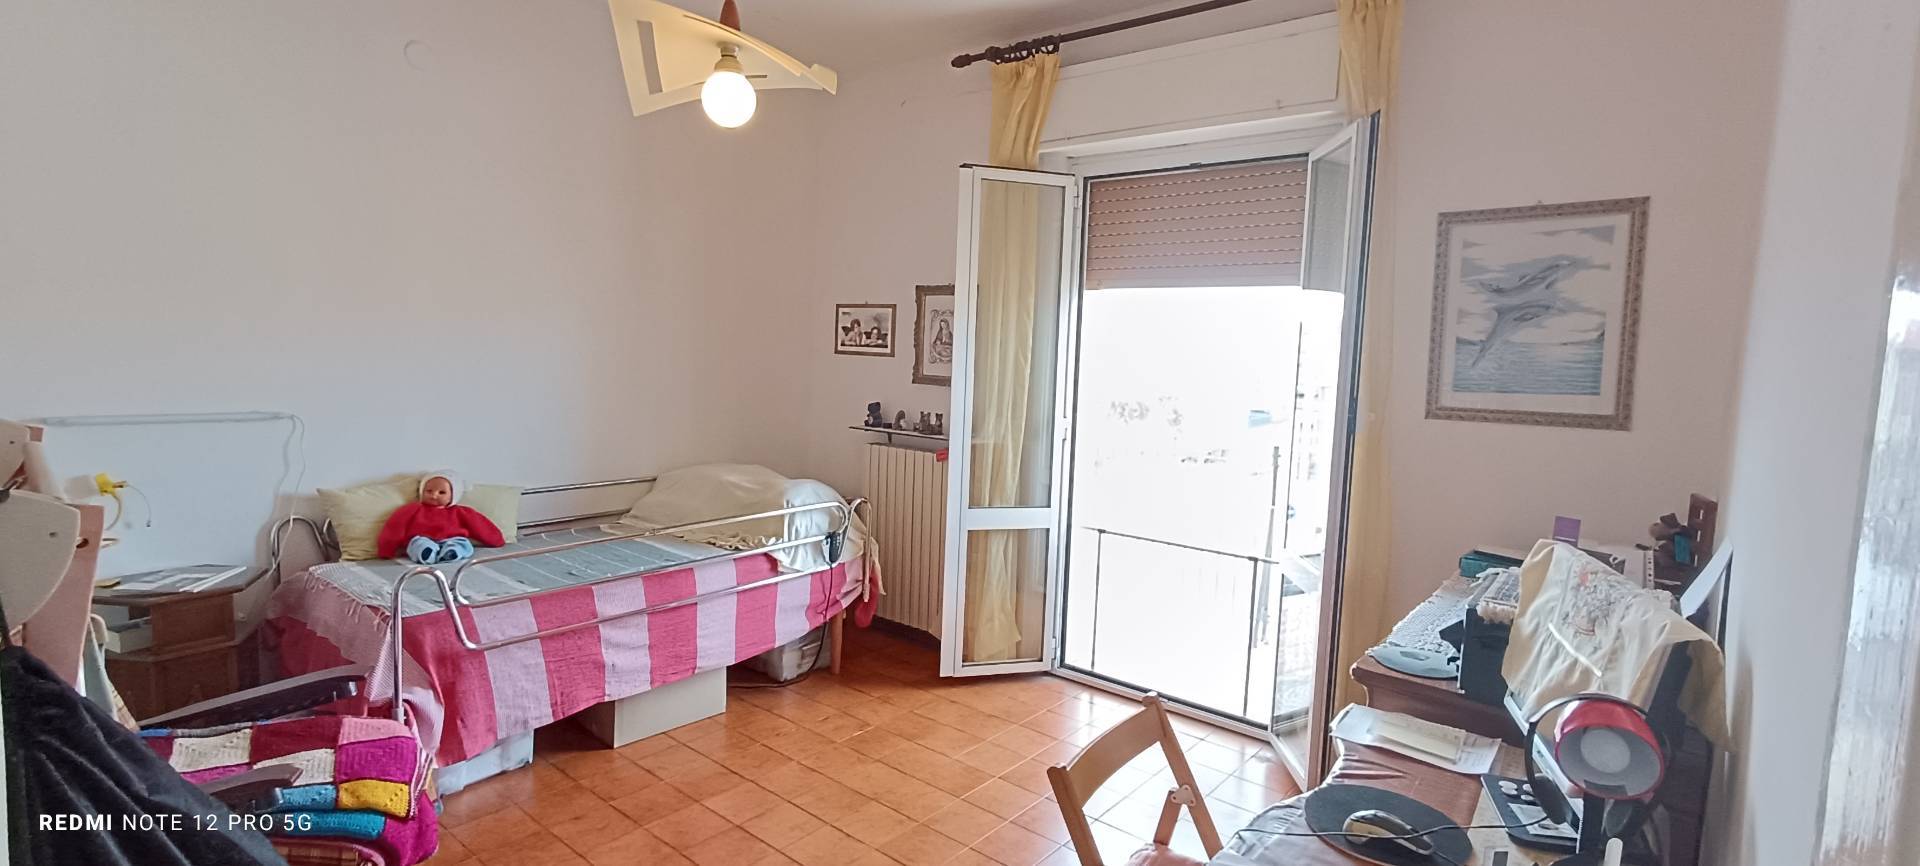 Appartamento in vendita a Civitanova Marche, 3 locali, zona Località: CIVITANOVAMARCHE, prezzo € 118.000 | PortaleAgenzieImmobiliari.it